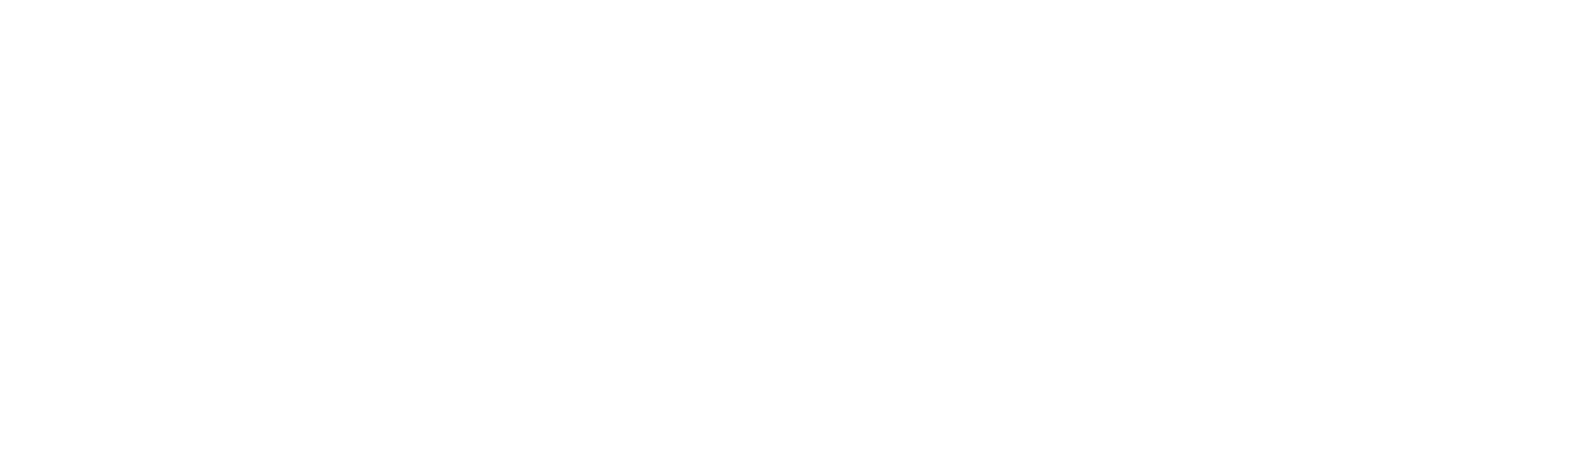 DSV logo pour fonds sombres (PNG transparent)